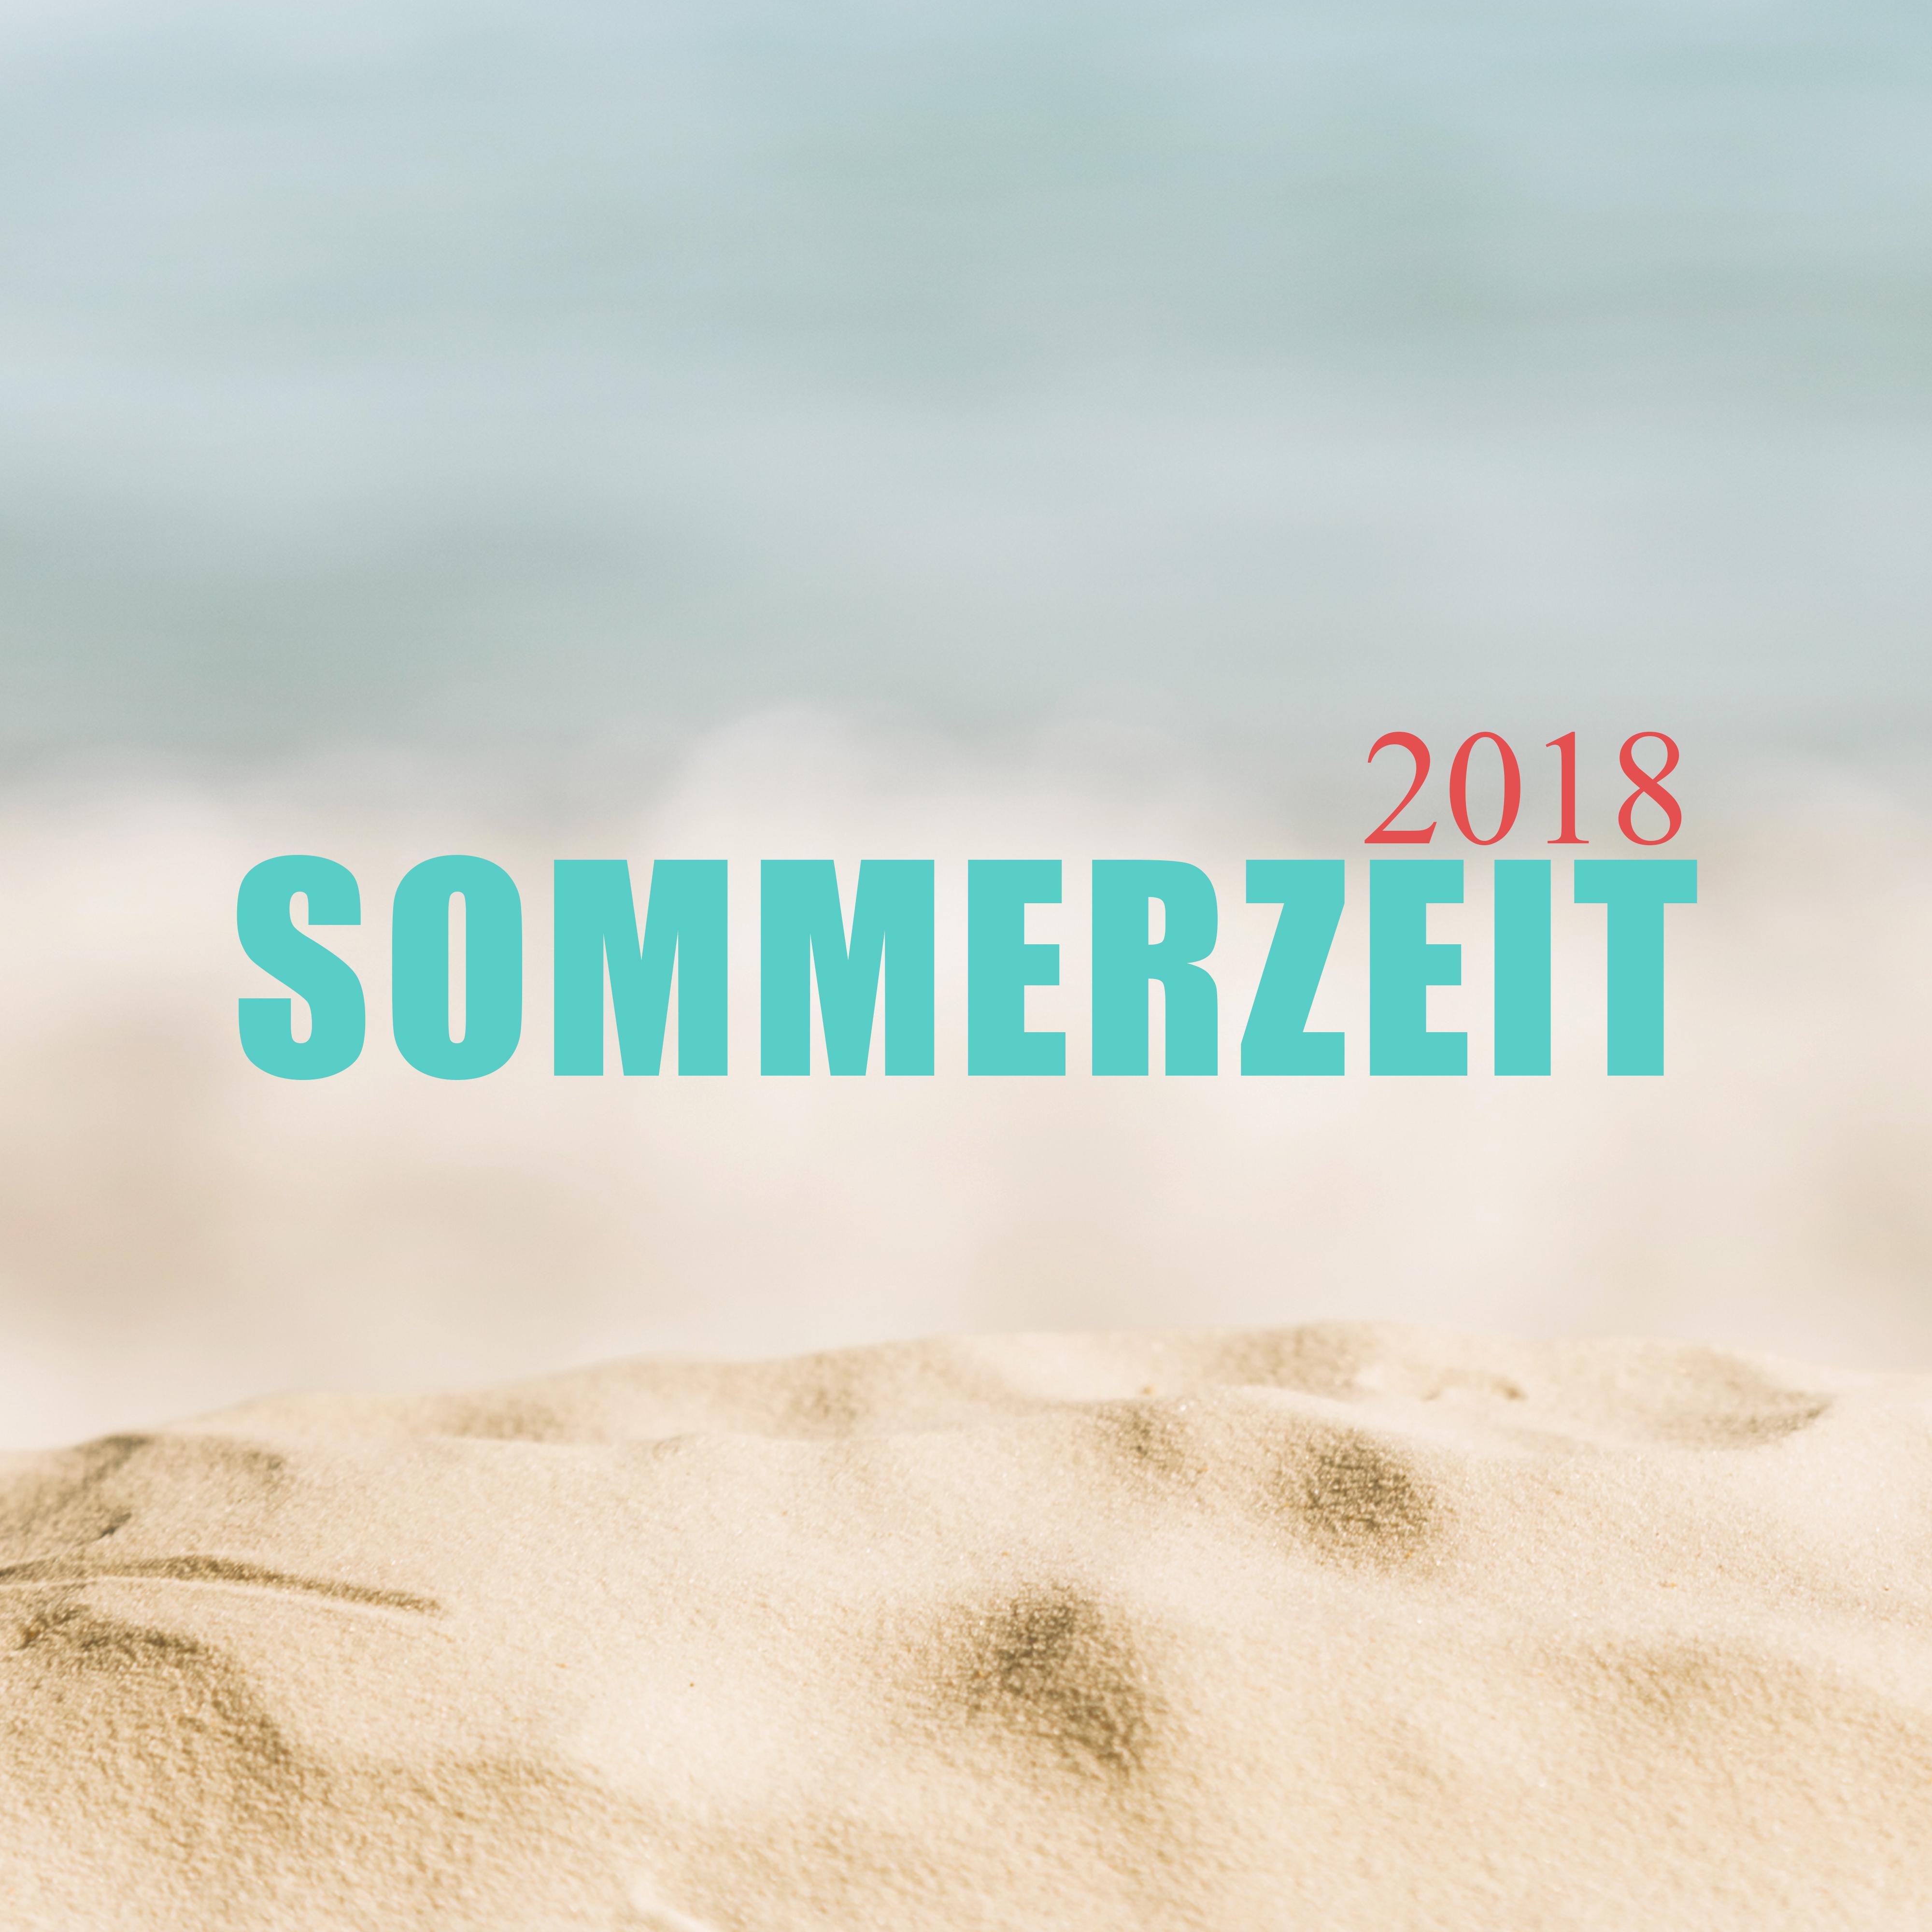 Sommerzeit 2018